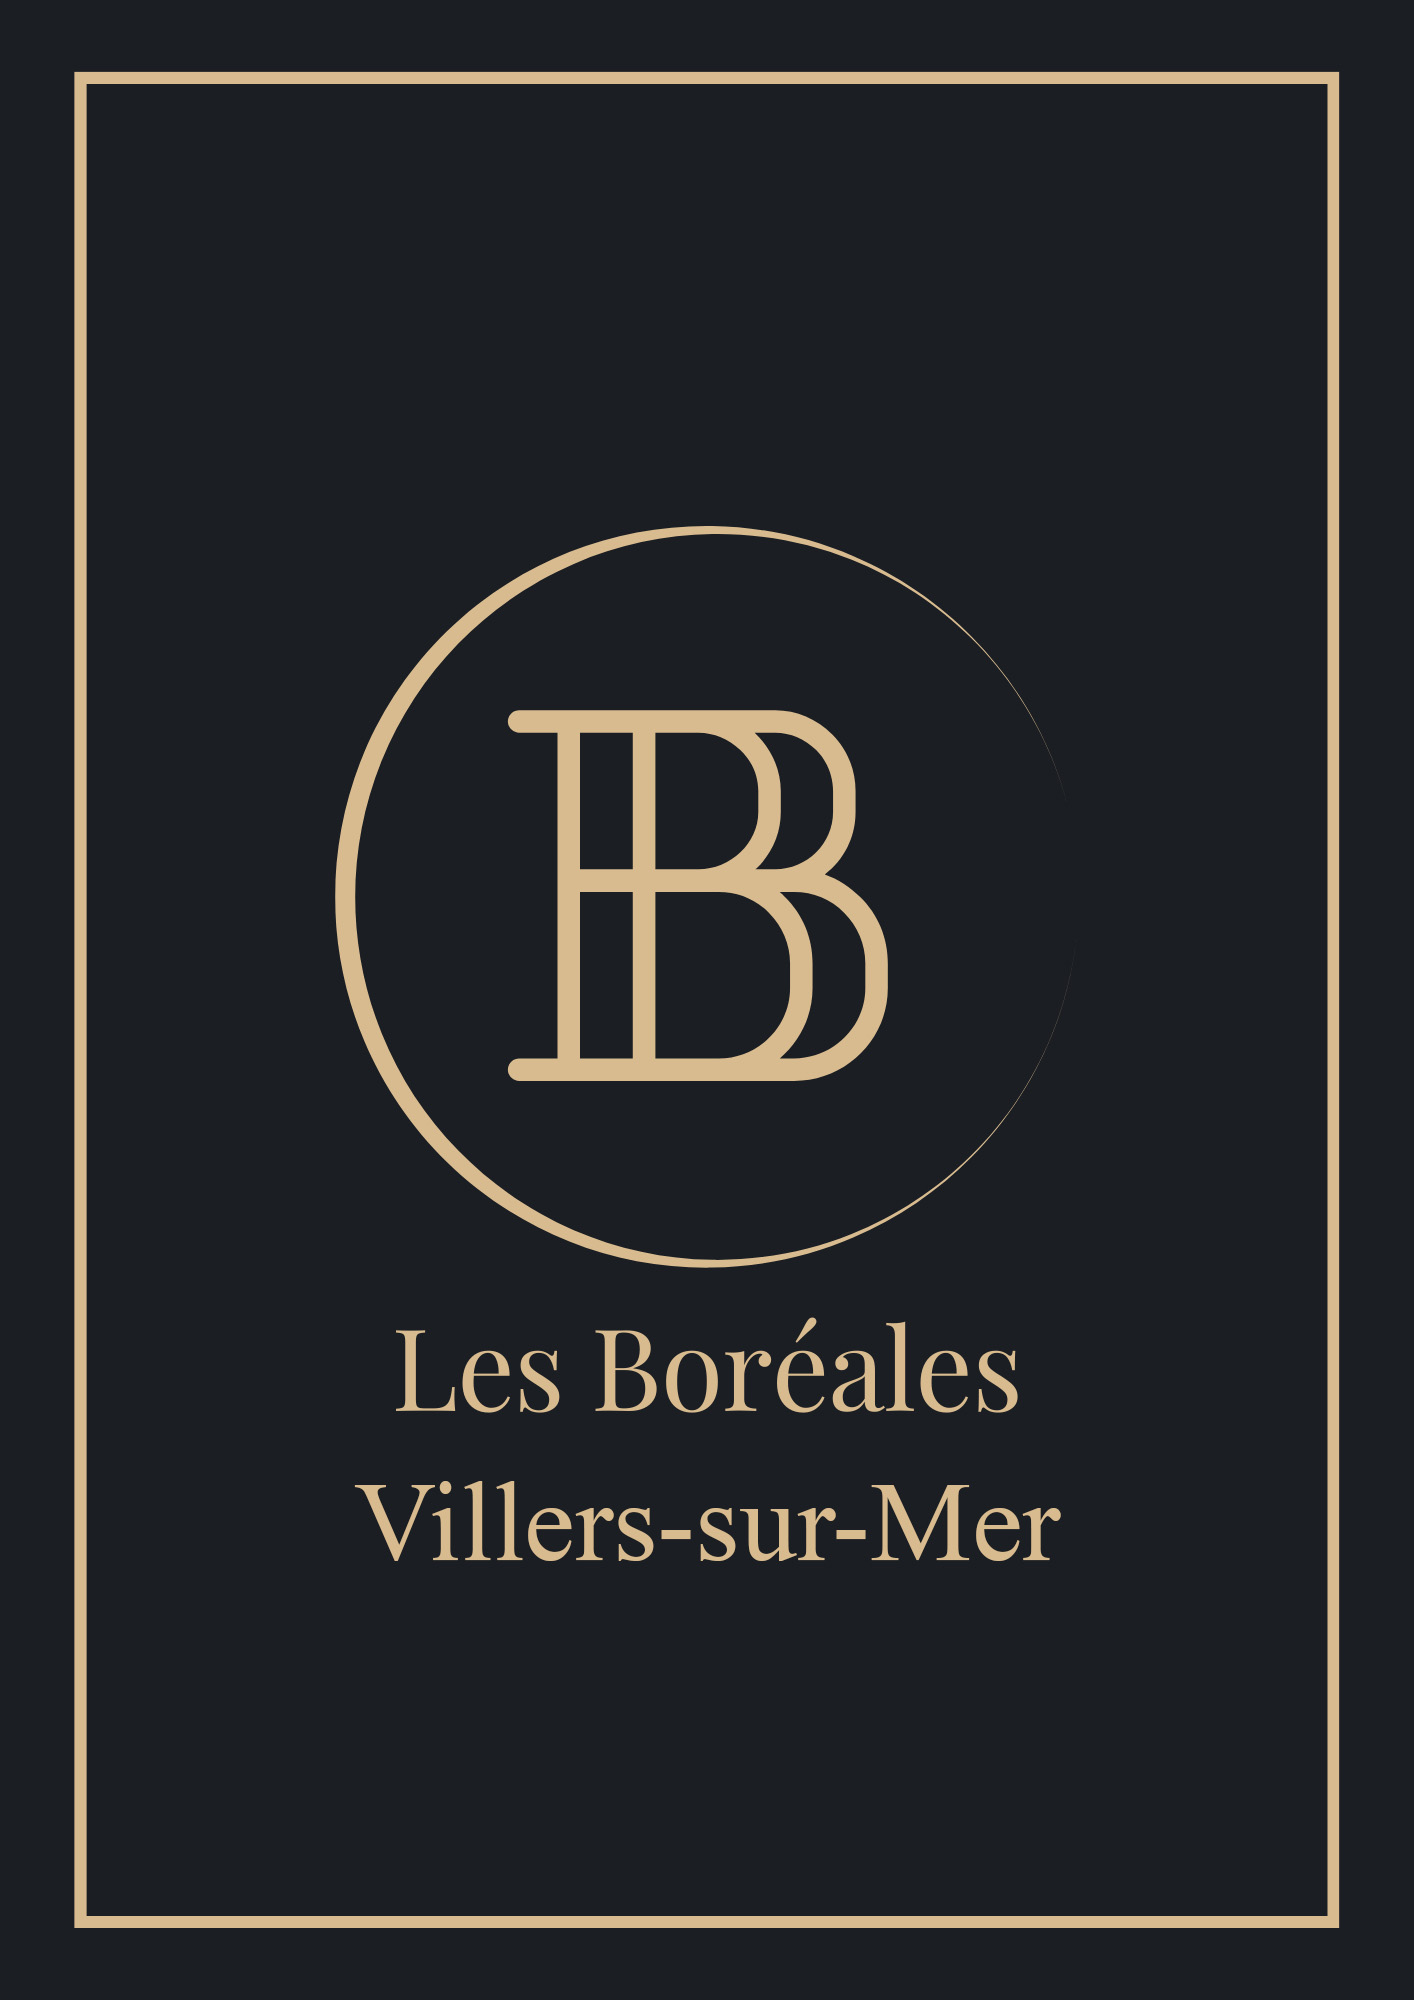 Restaurant Les Boréales Villers-sur-Mer